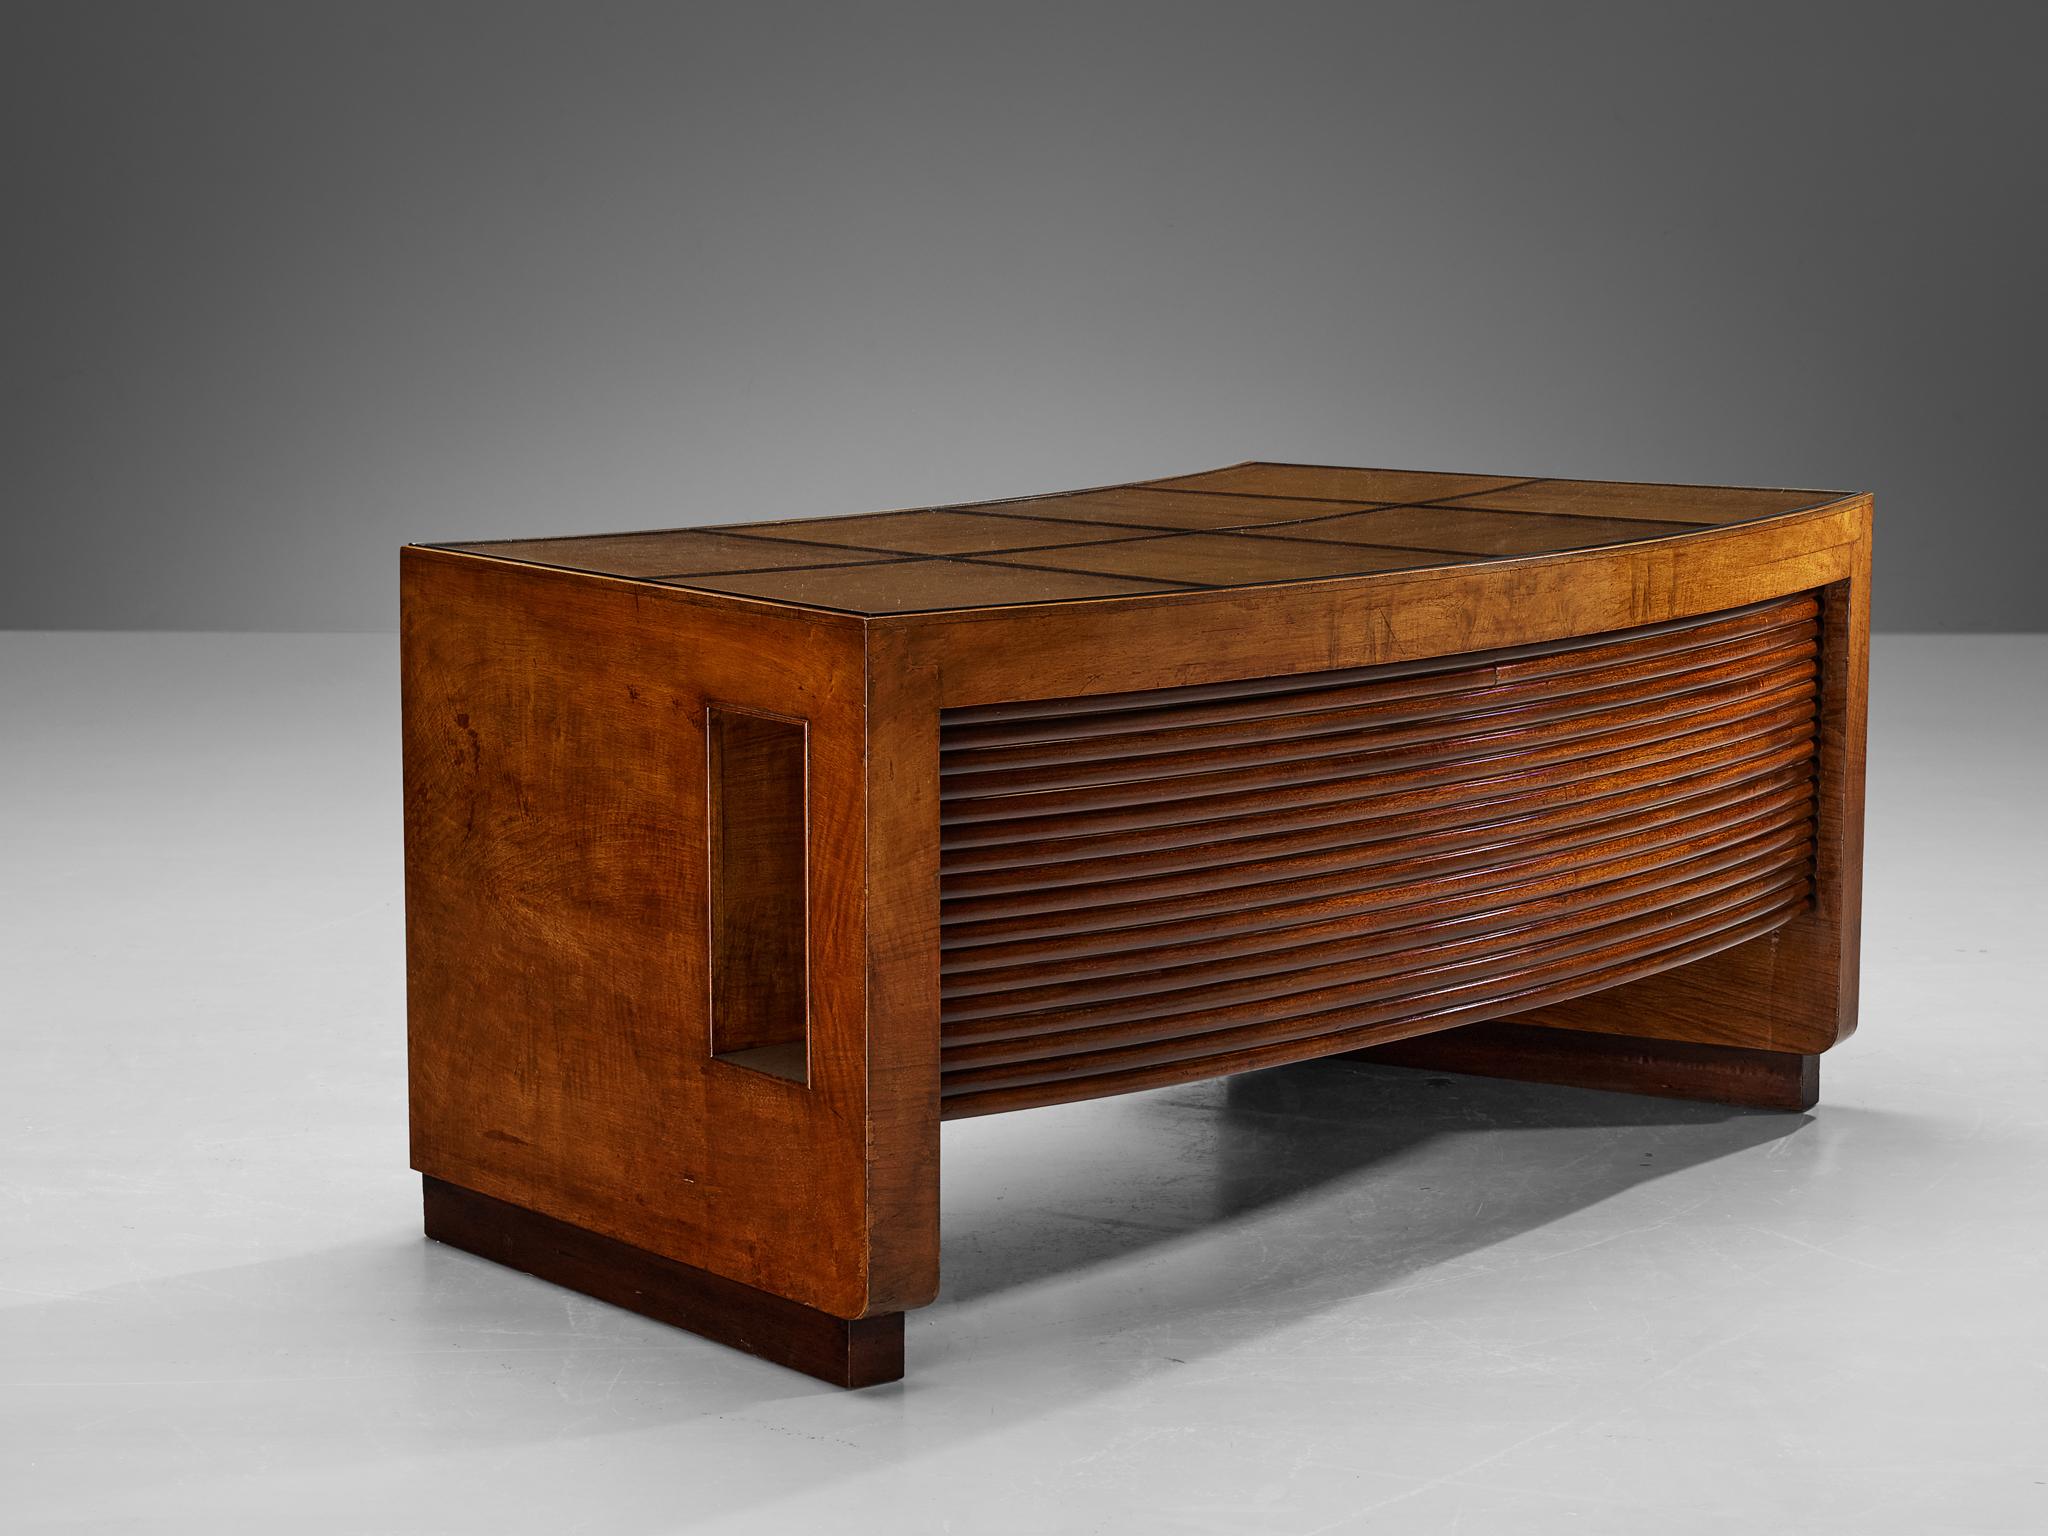 Gio Ponti, Schreibtisch, Nussbaum, Mahagoni, Glas, Italien, 1940er Jahre

Dieser Schreibtisch, ein seltener Fund von Gio Ponti, stammt aus den 1940er Jahren. Das Design ist wahrhaft prächtig, mit einem sichelförmigen Rahmen, der mit einer